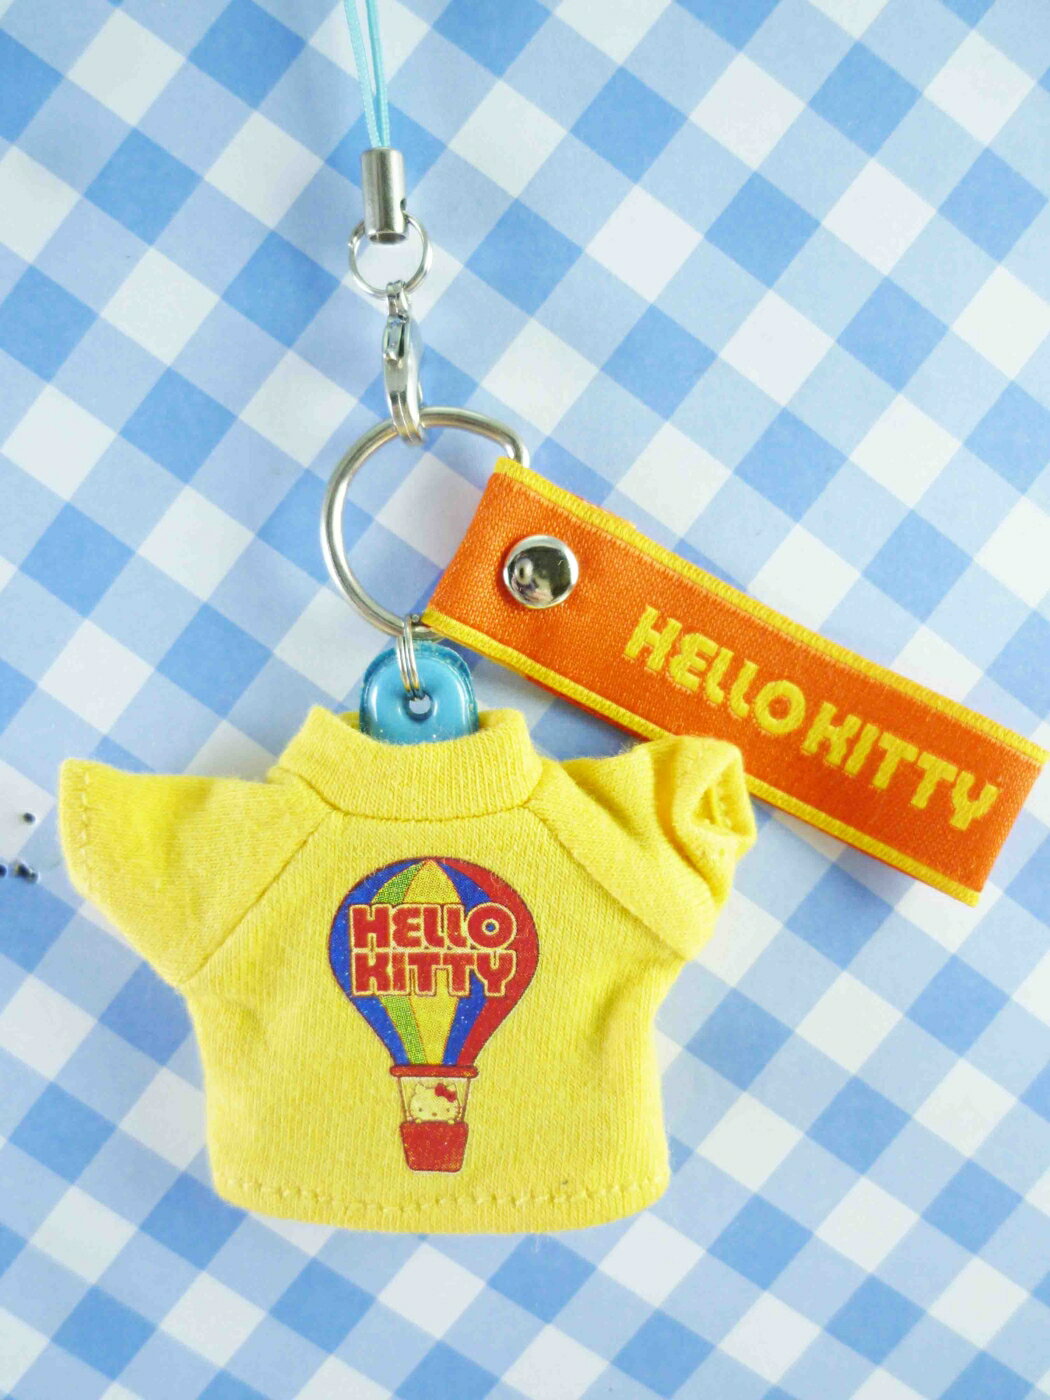 【震撼精品百貨】Hello Kitty 凱蒂貓 限定版手機吊飾-黃熱氣球 震撼日式精品百貨